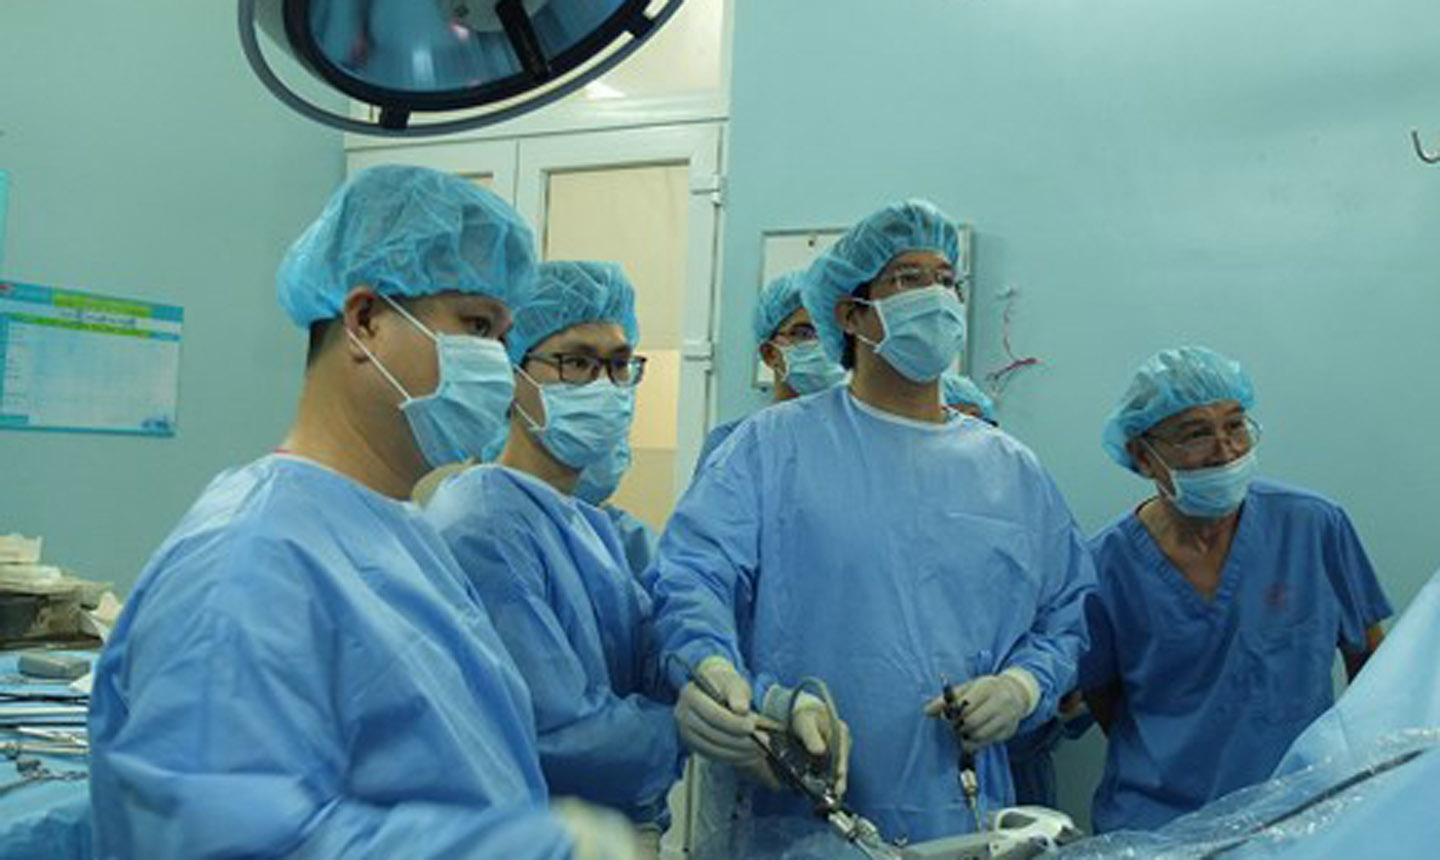 Các bác sĩ đang tiến hành phẫu thuật nội soi lấy chiếc tăm